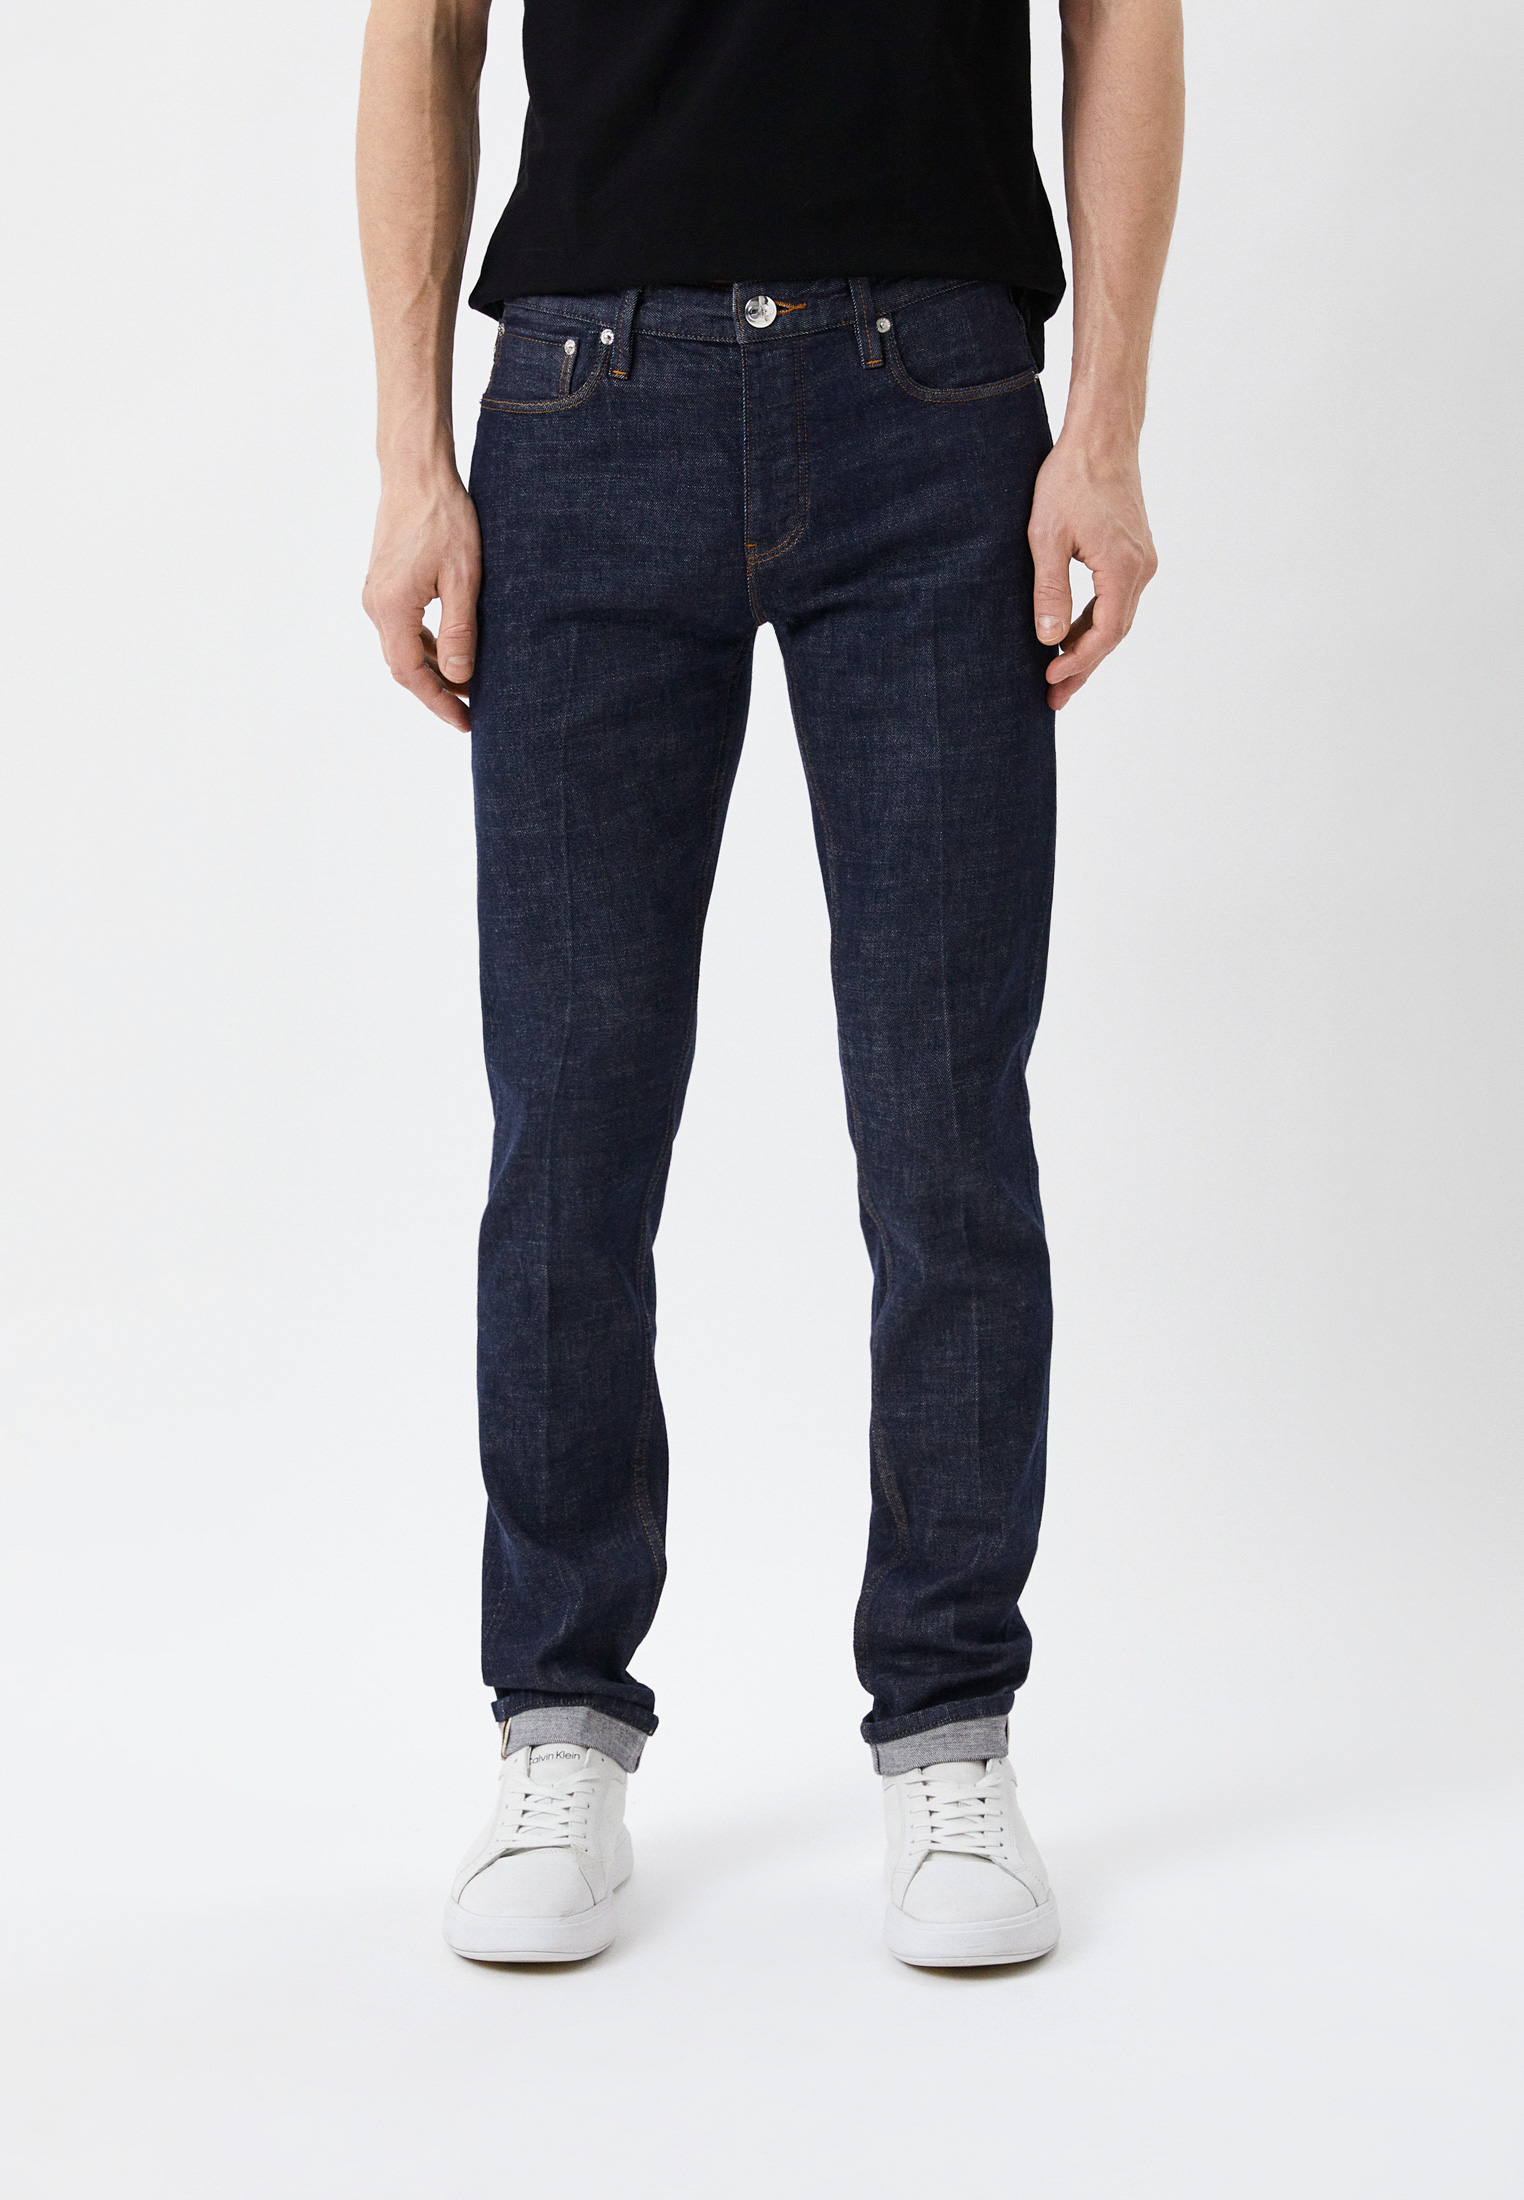 Мужские зауженные джинсы Emporio Armani (Эмпорио Армани) 3R1J75 1DPZZ: изображение 1